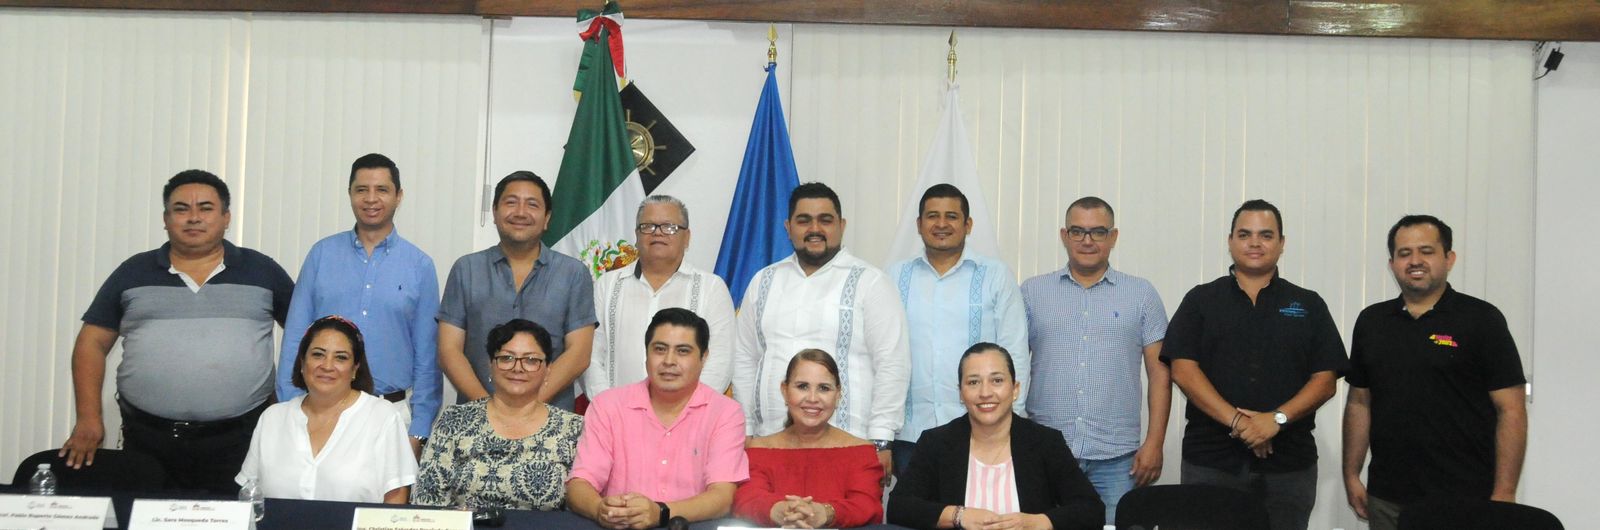 Puerto Vallarta y Aguascalientes serán ejemplo de prosperidad y amistad en México